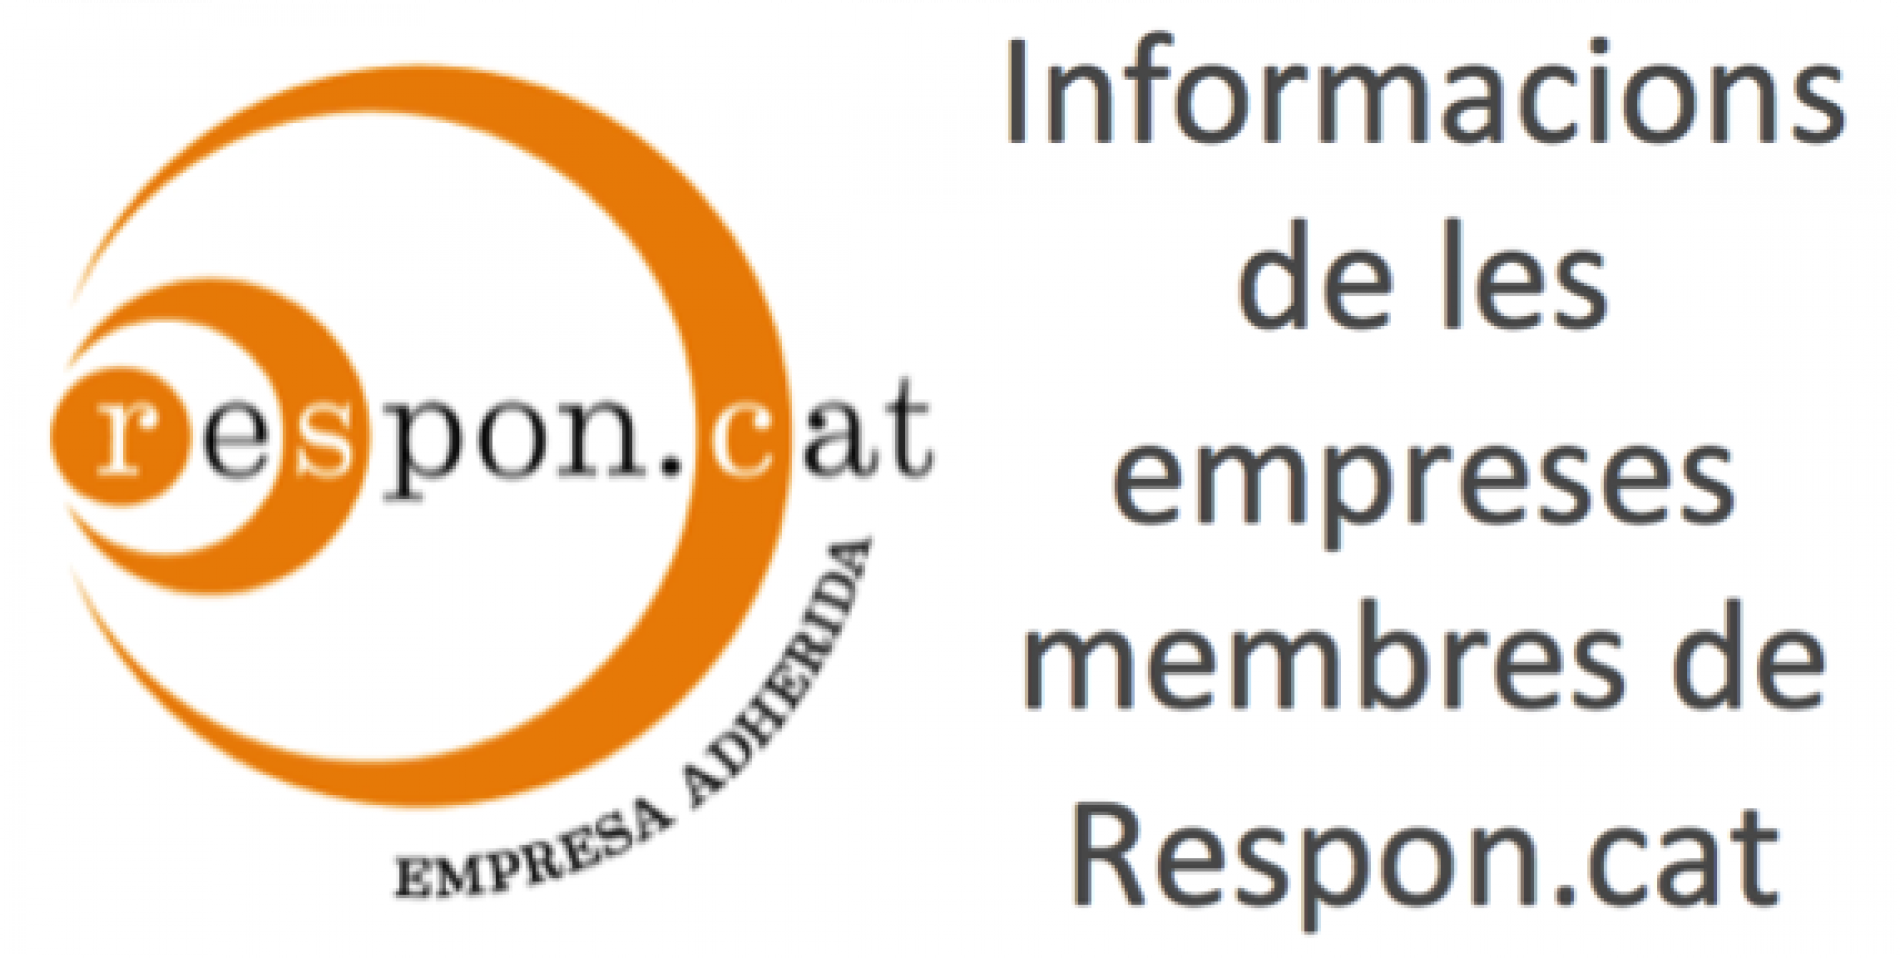 RACC, empresa membre de Respon.cat, organitza el 5è Ecorally a Barcelona